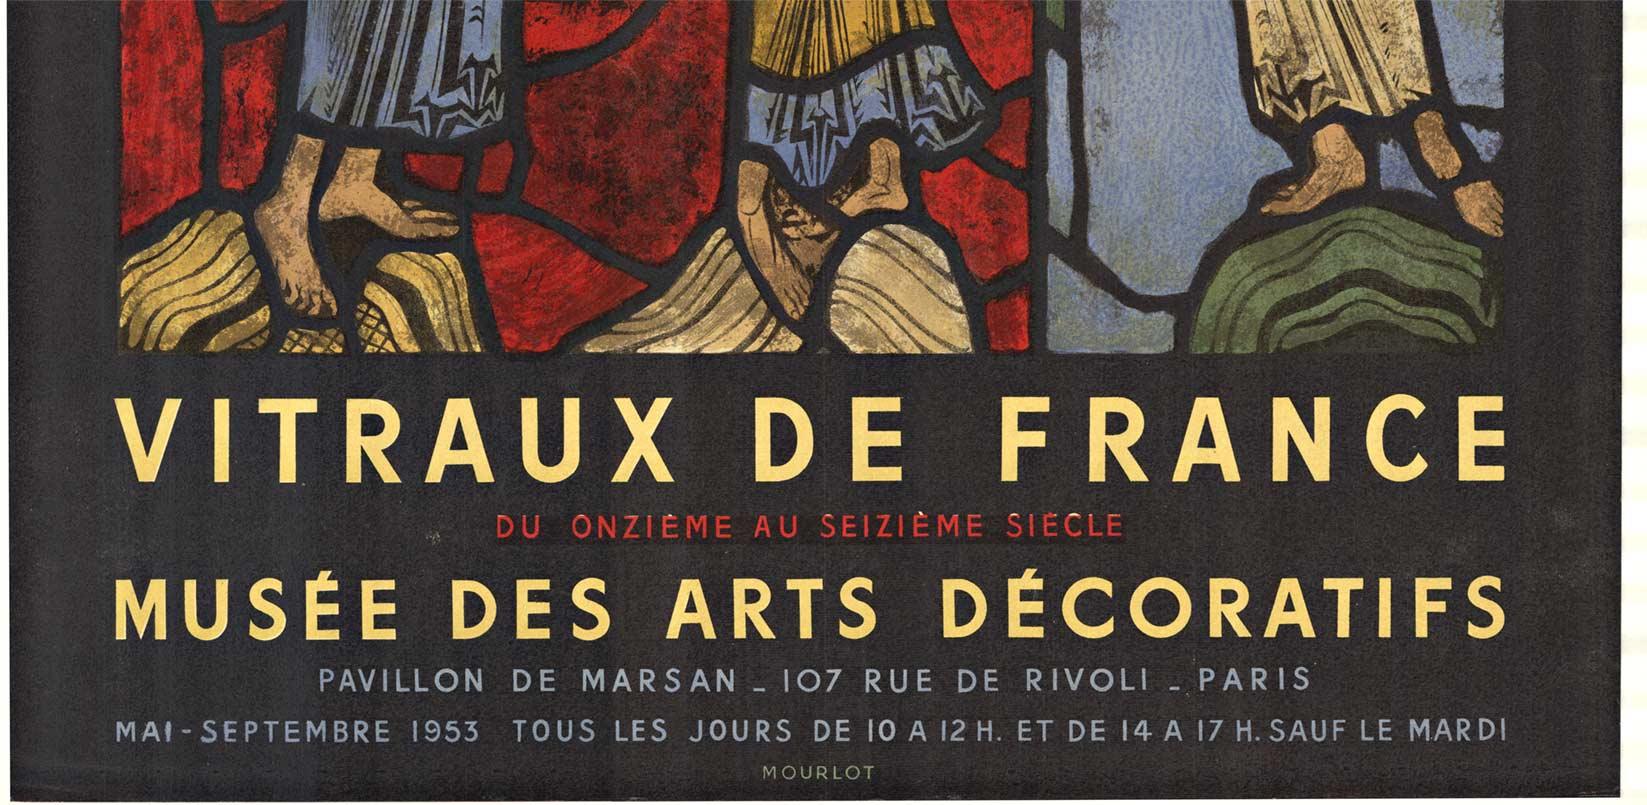 VITRAUX DE FRANCE.   Musée des arts décoratifs, Paris.  Affiche originale millésimée 1953 de Mourlot présentant l'exposition de vitraux du XIe au XVIe siècle.   Il s'agit d'une affiche originale de 1953, rare et en excellent état, imprimée par